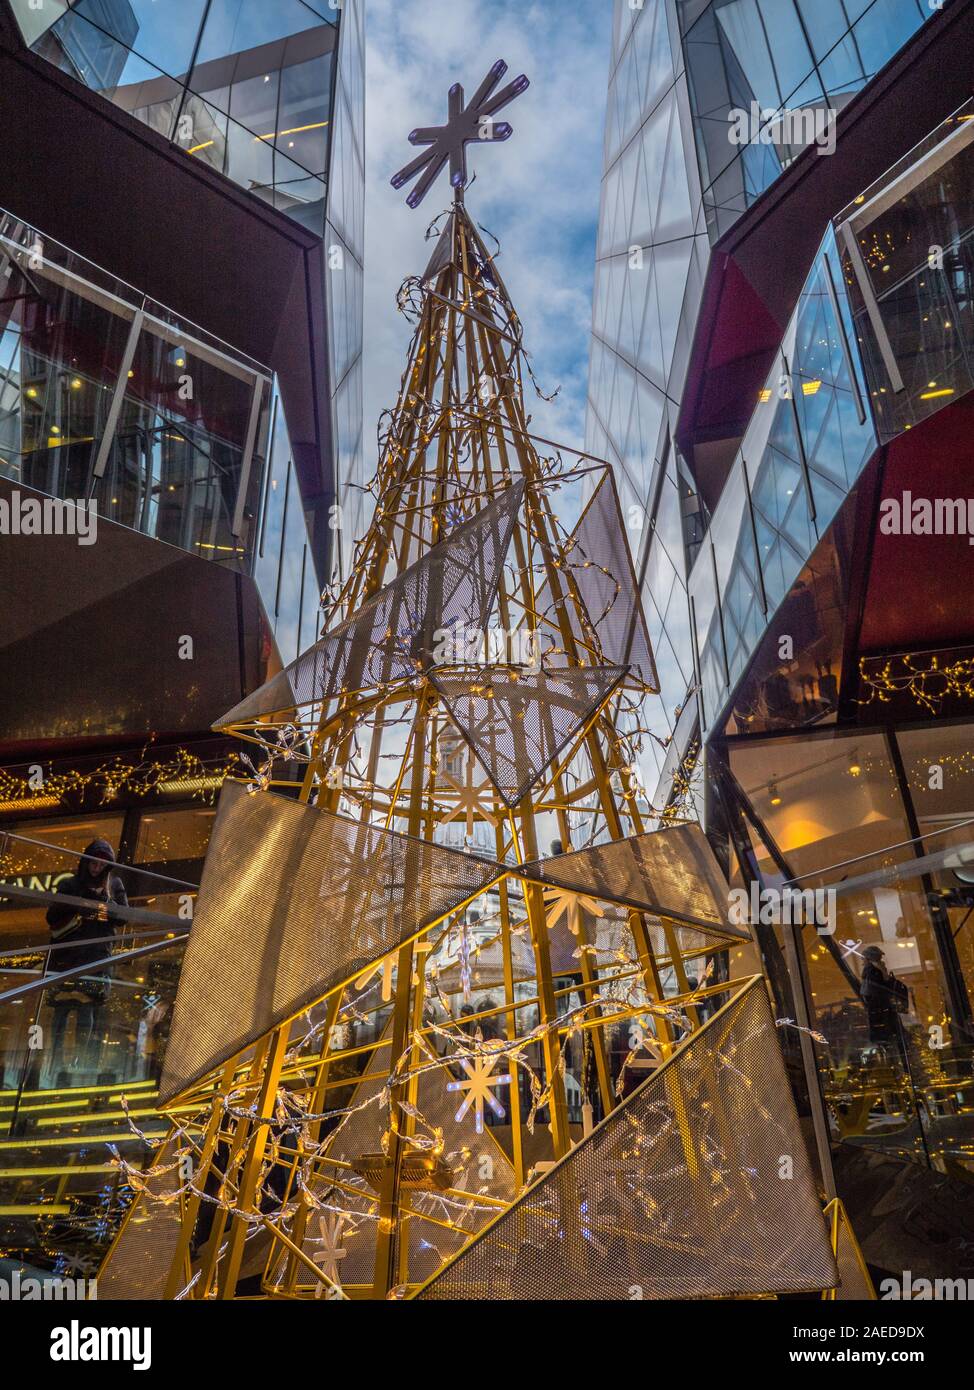 Der Weihnachtsbaum, ein neuer Change Shopping Centre, London, England, UK, GB. Stockfoto